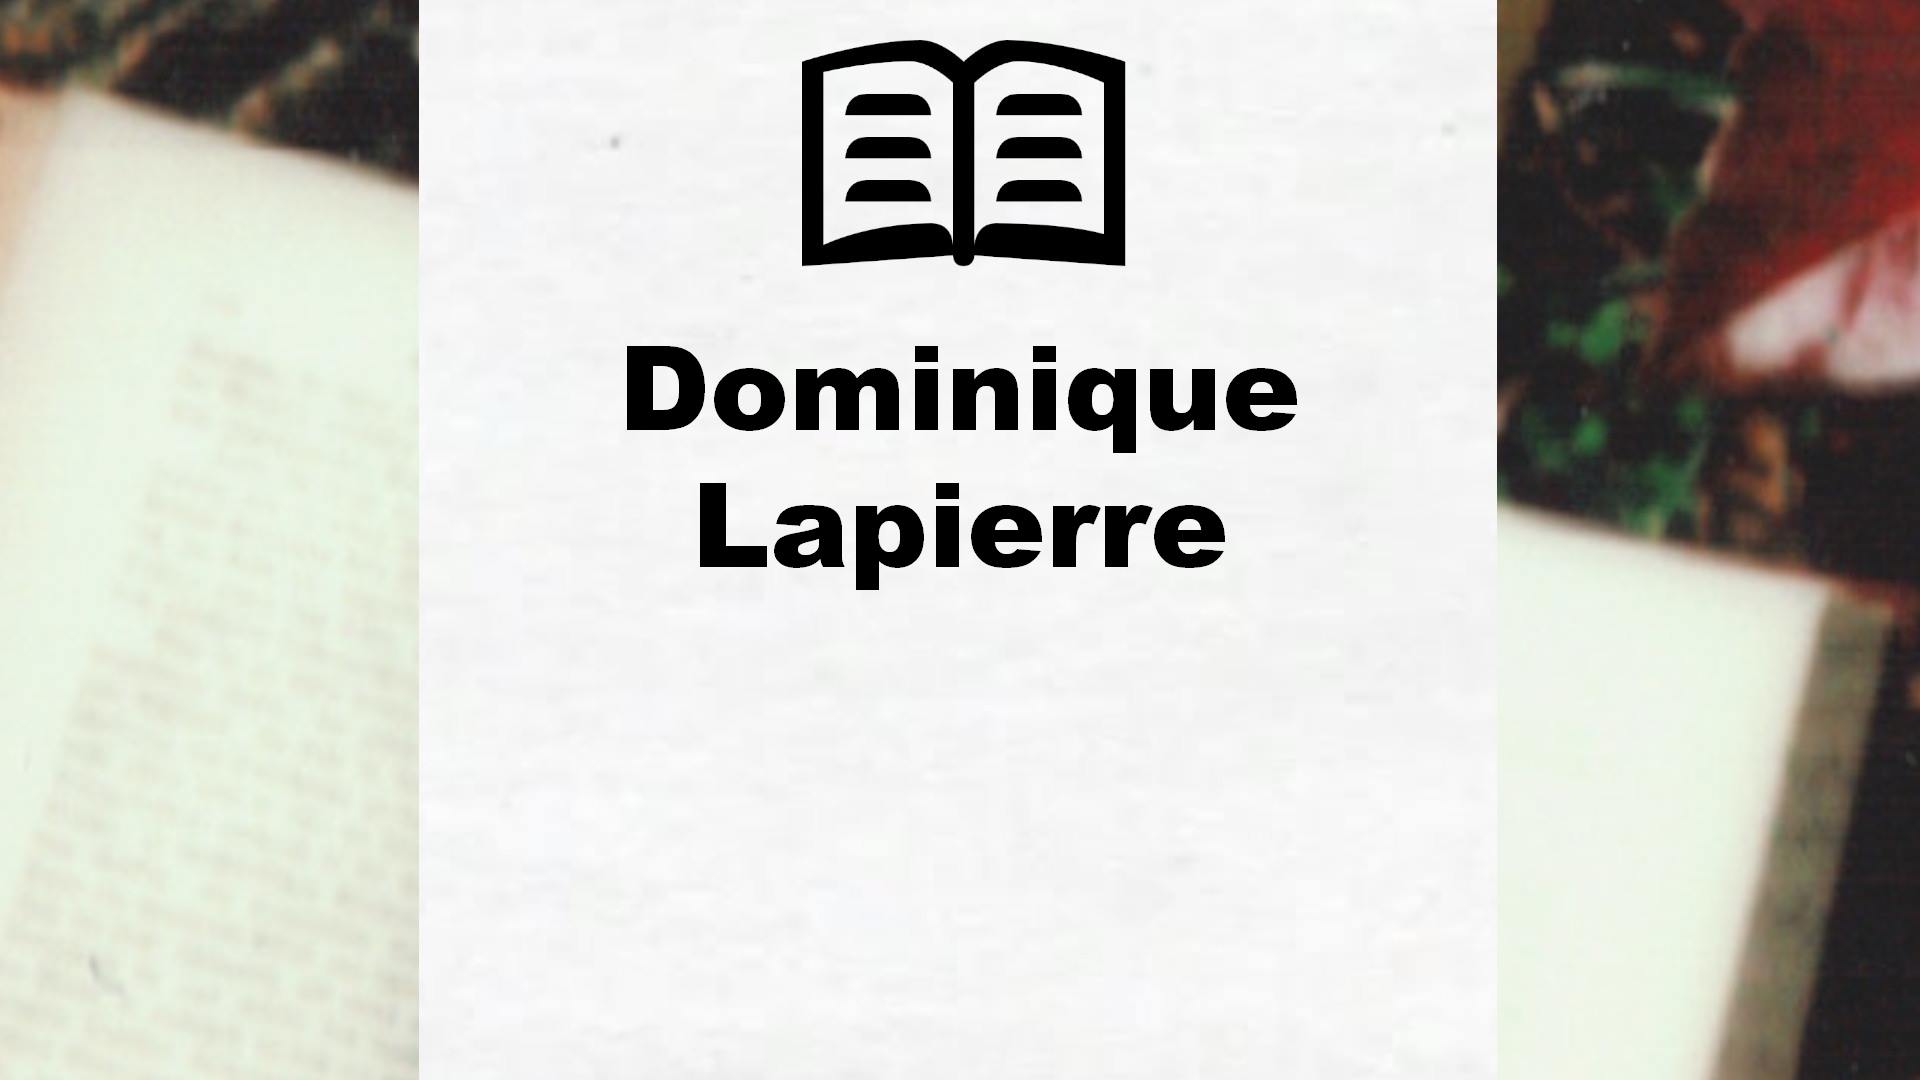 Livres de Dominique Lapierre